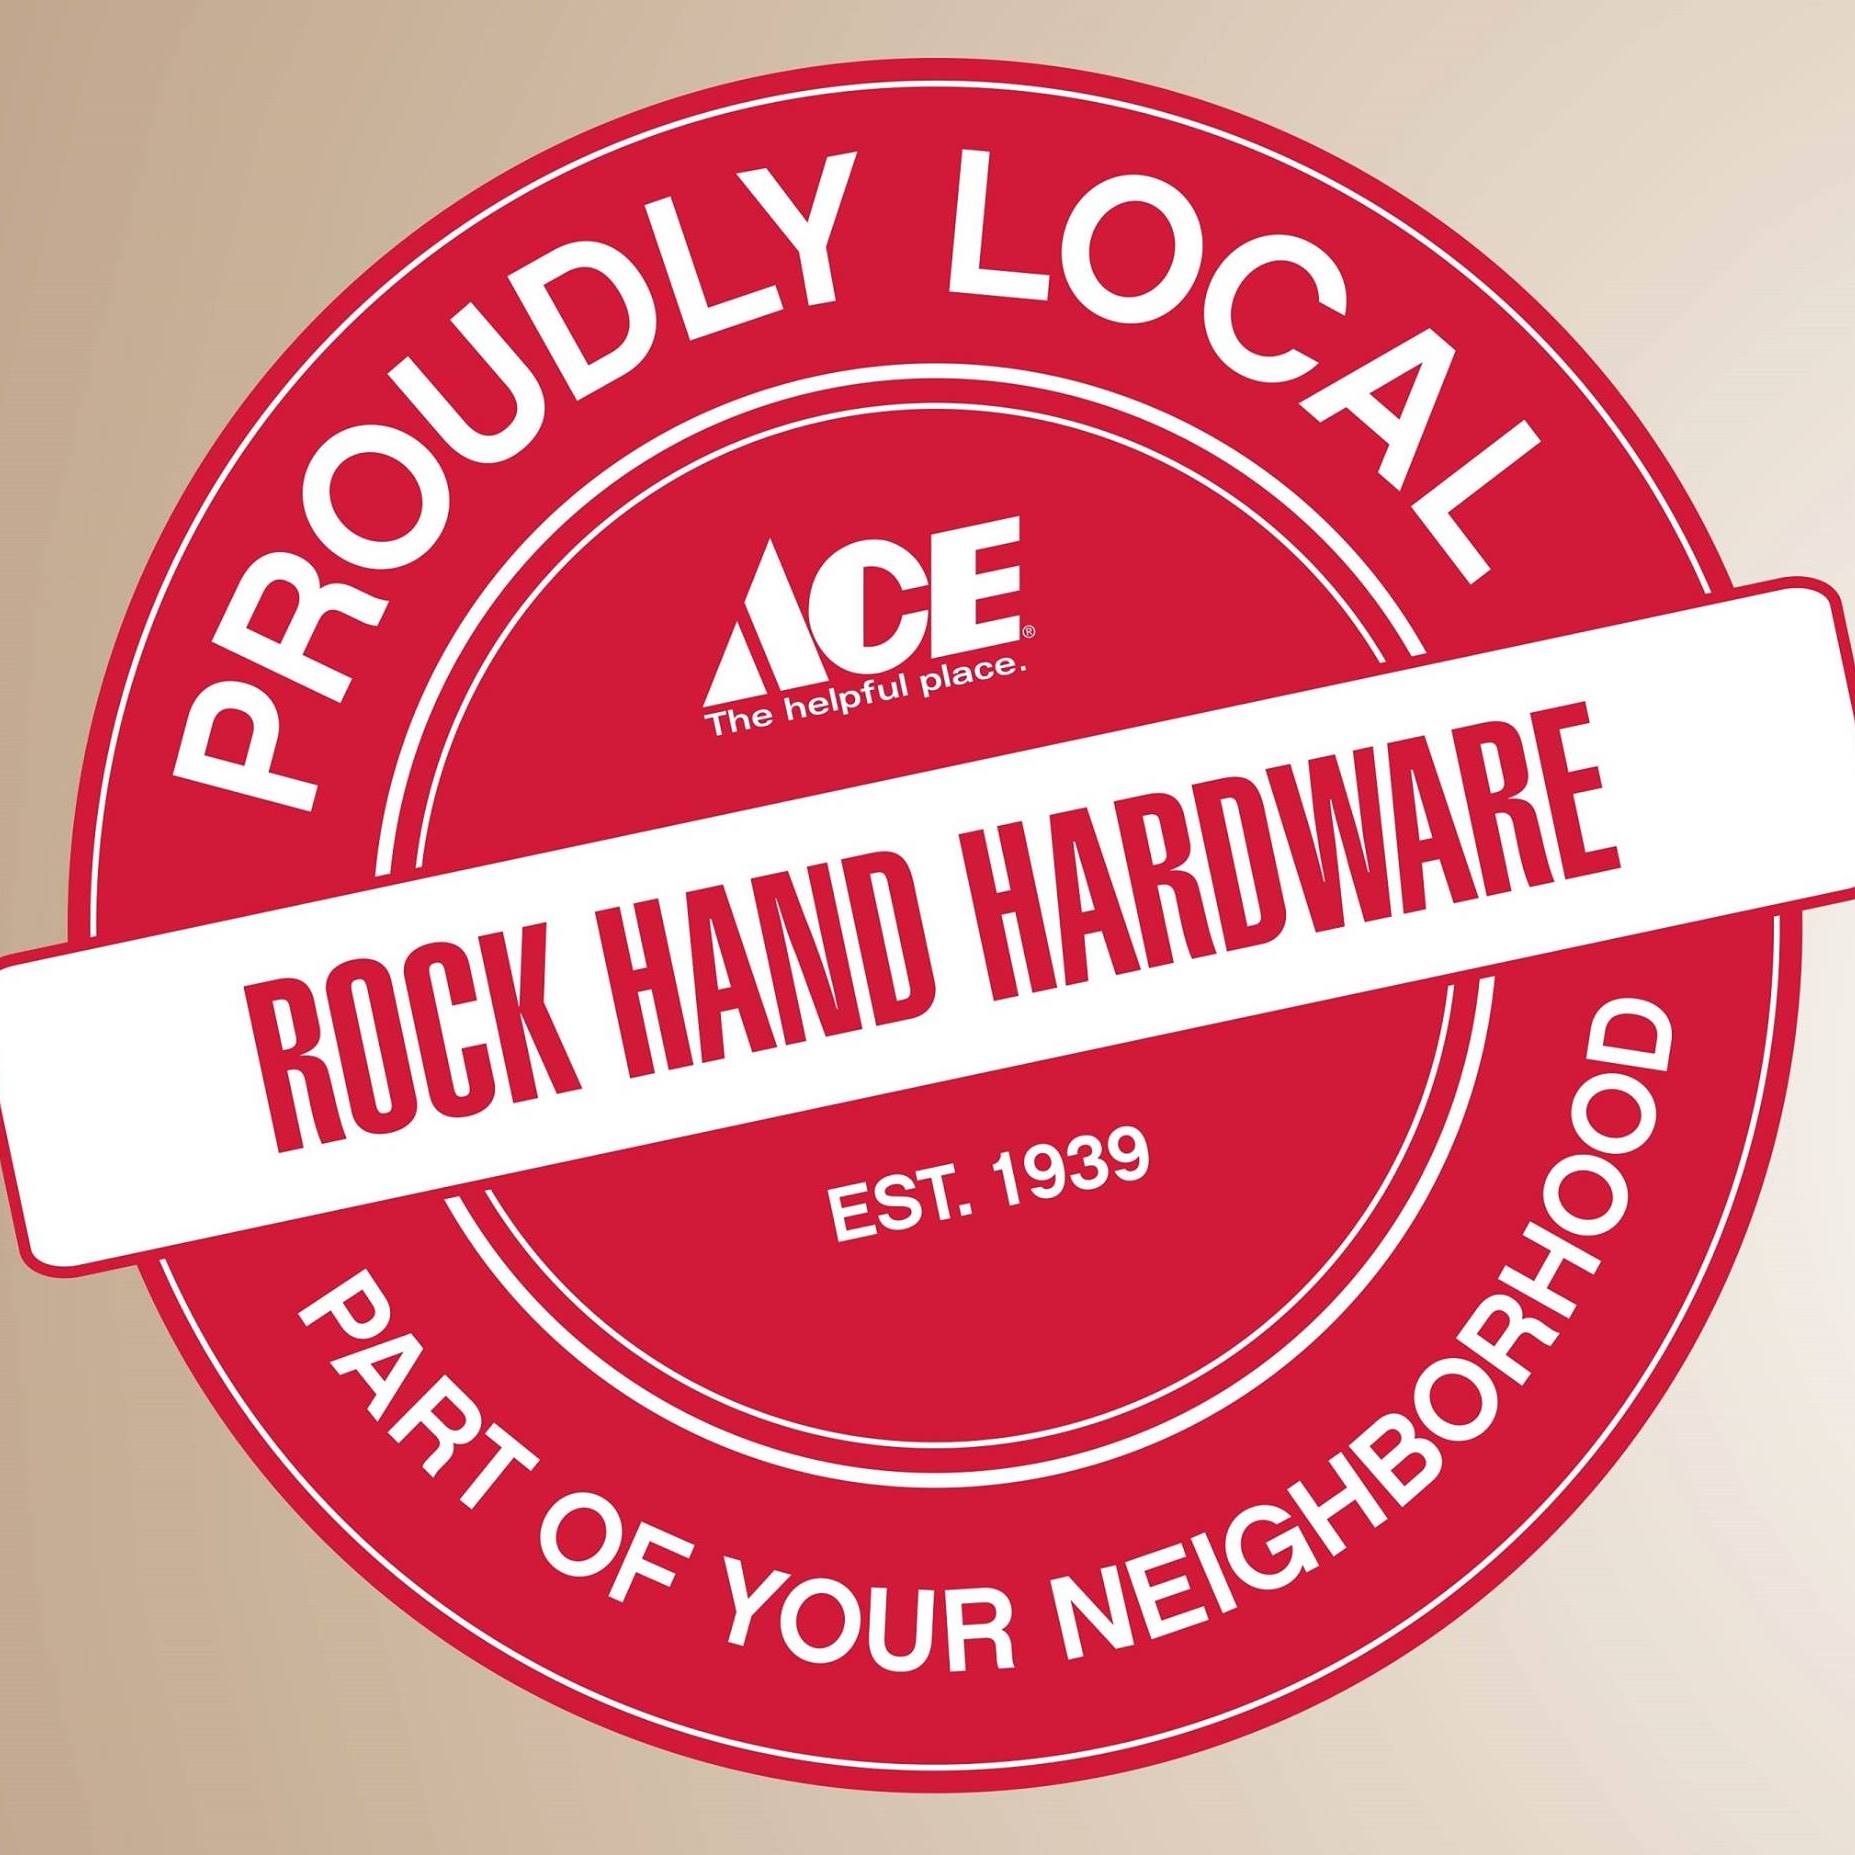 Company logo of Rock Hand Hardware